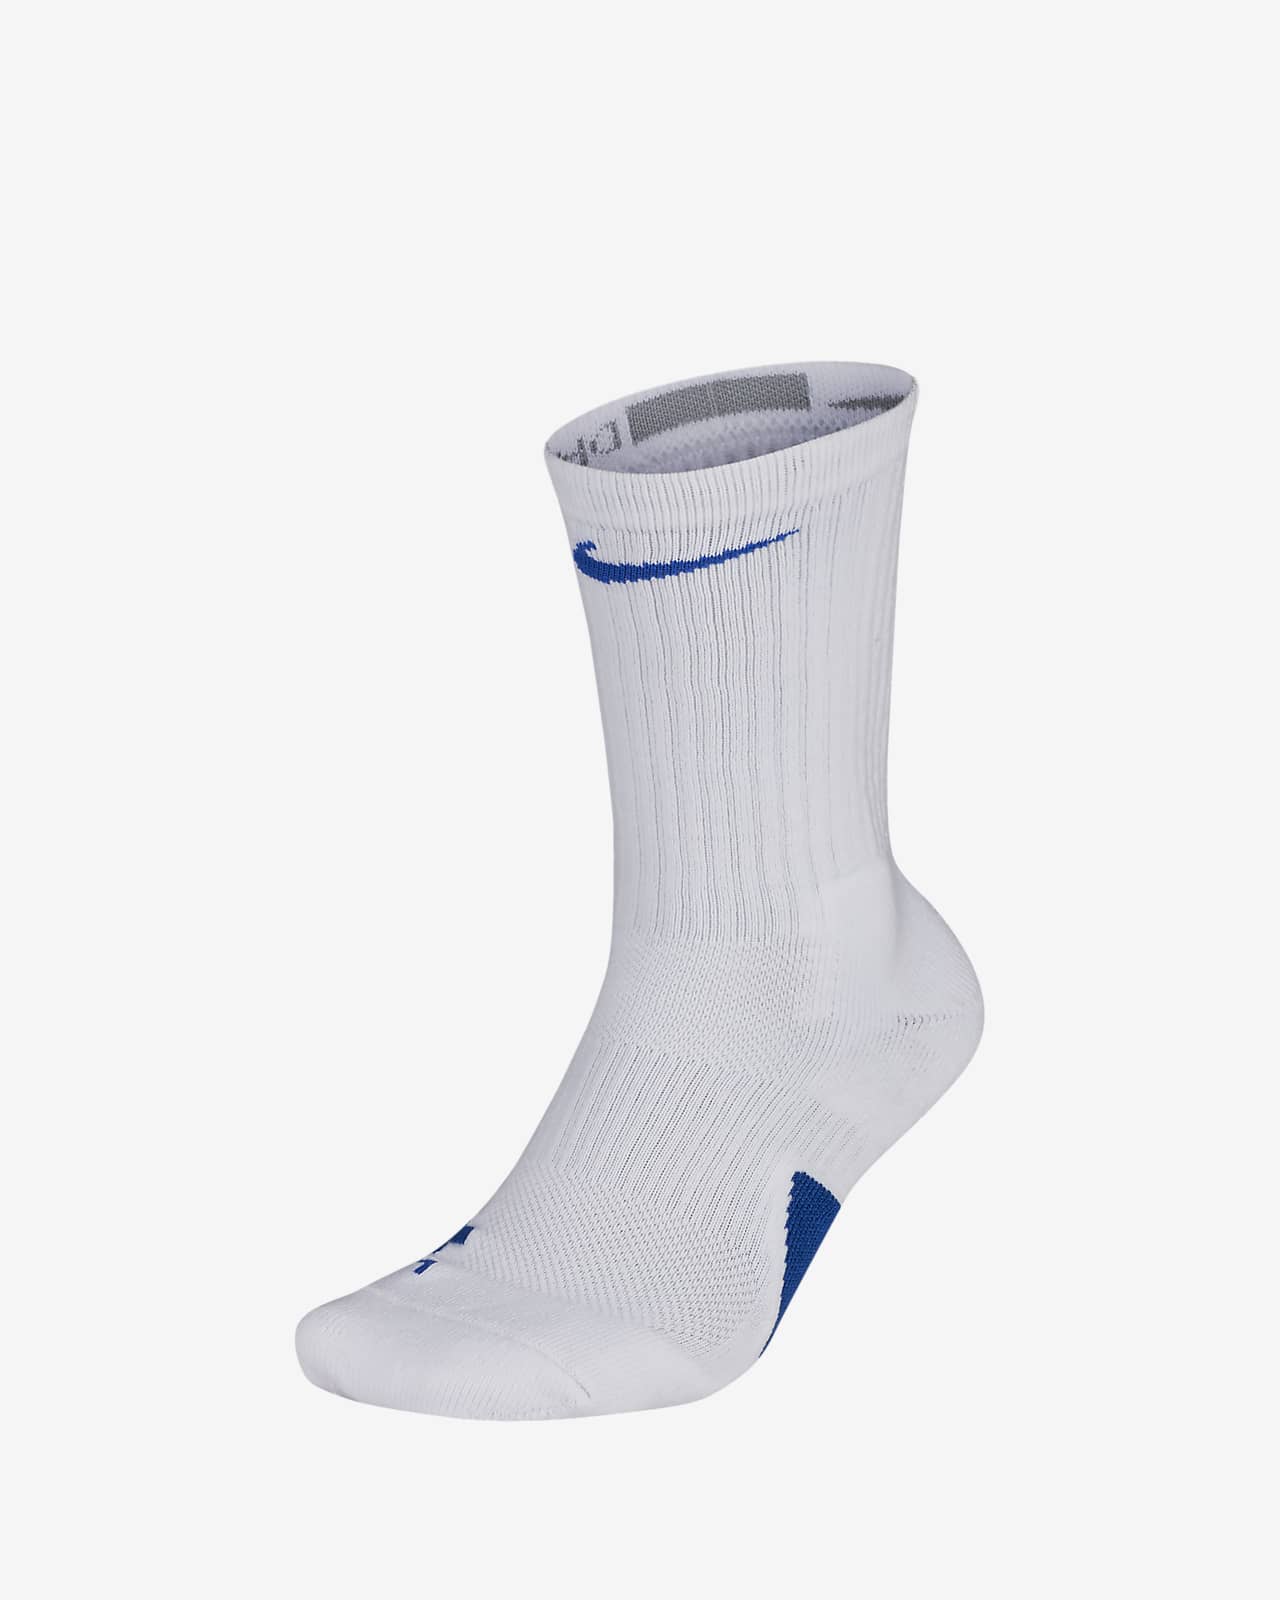 nike socks blue and white